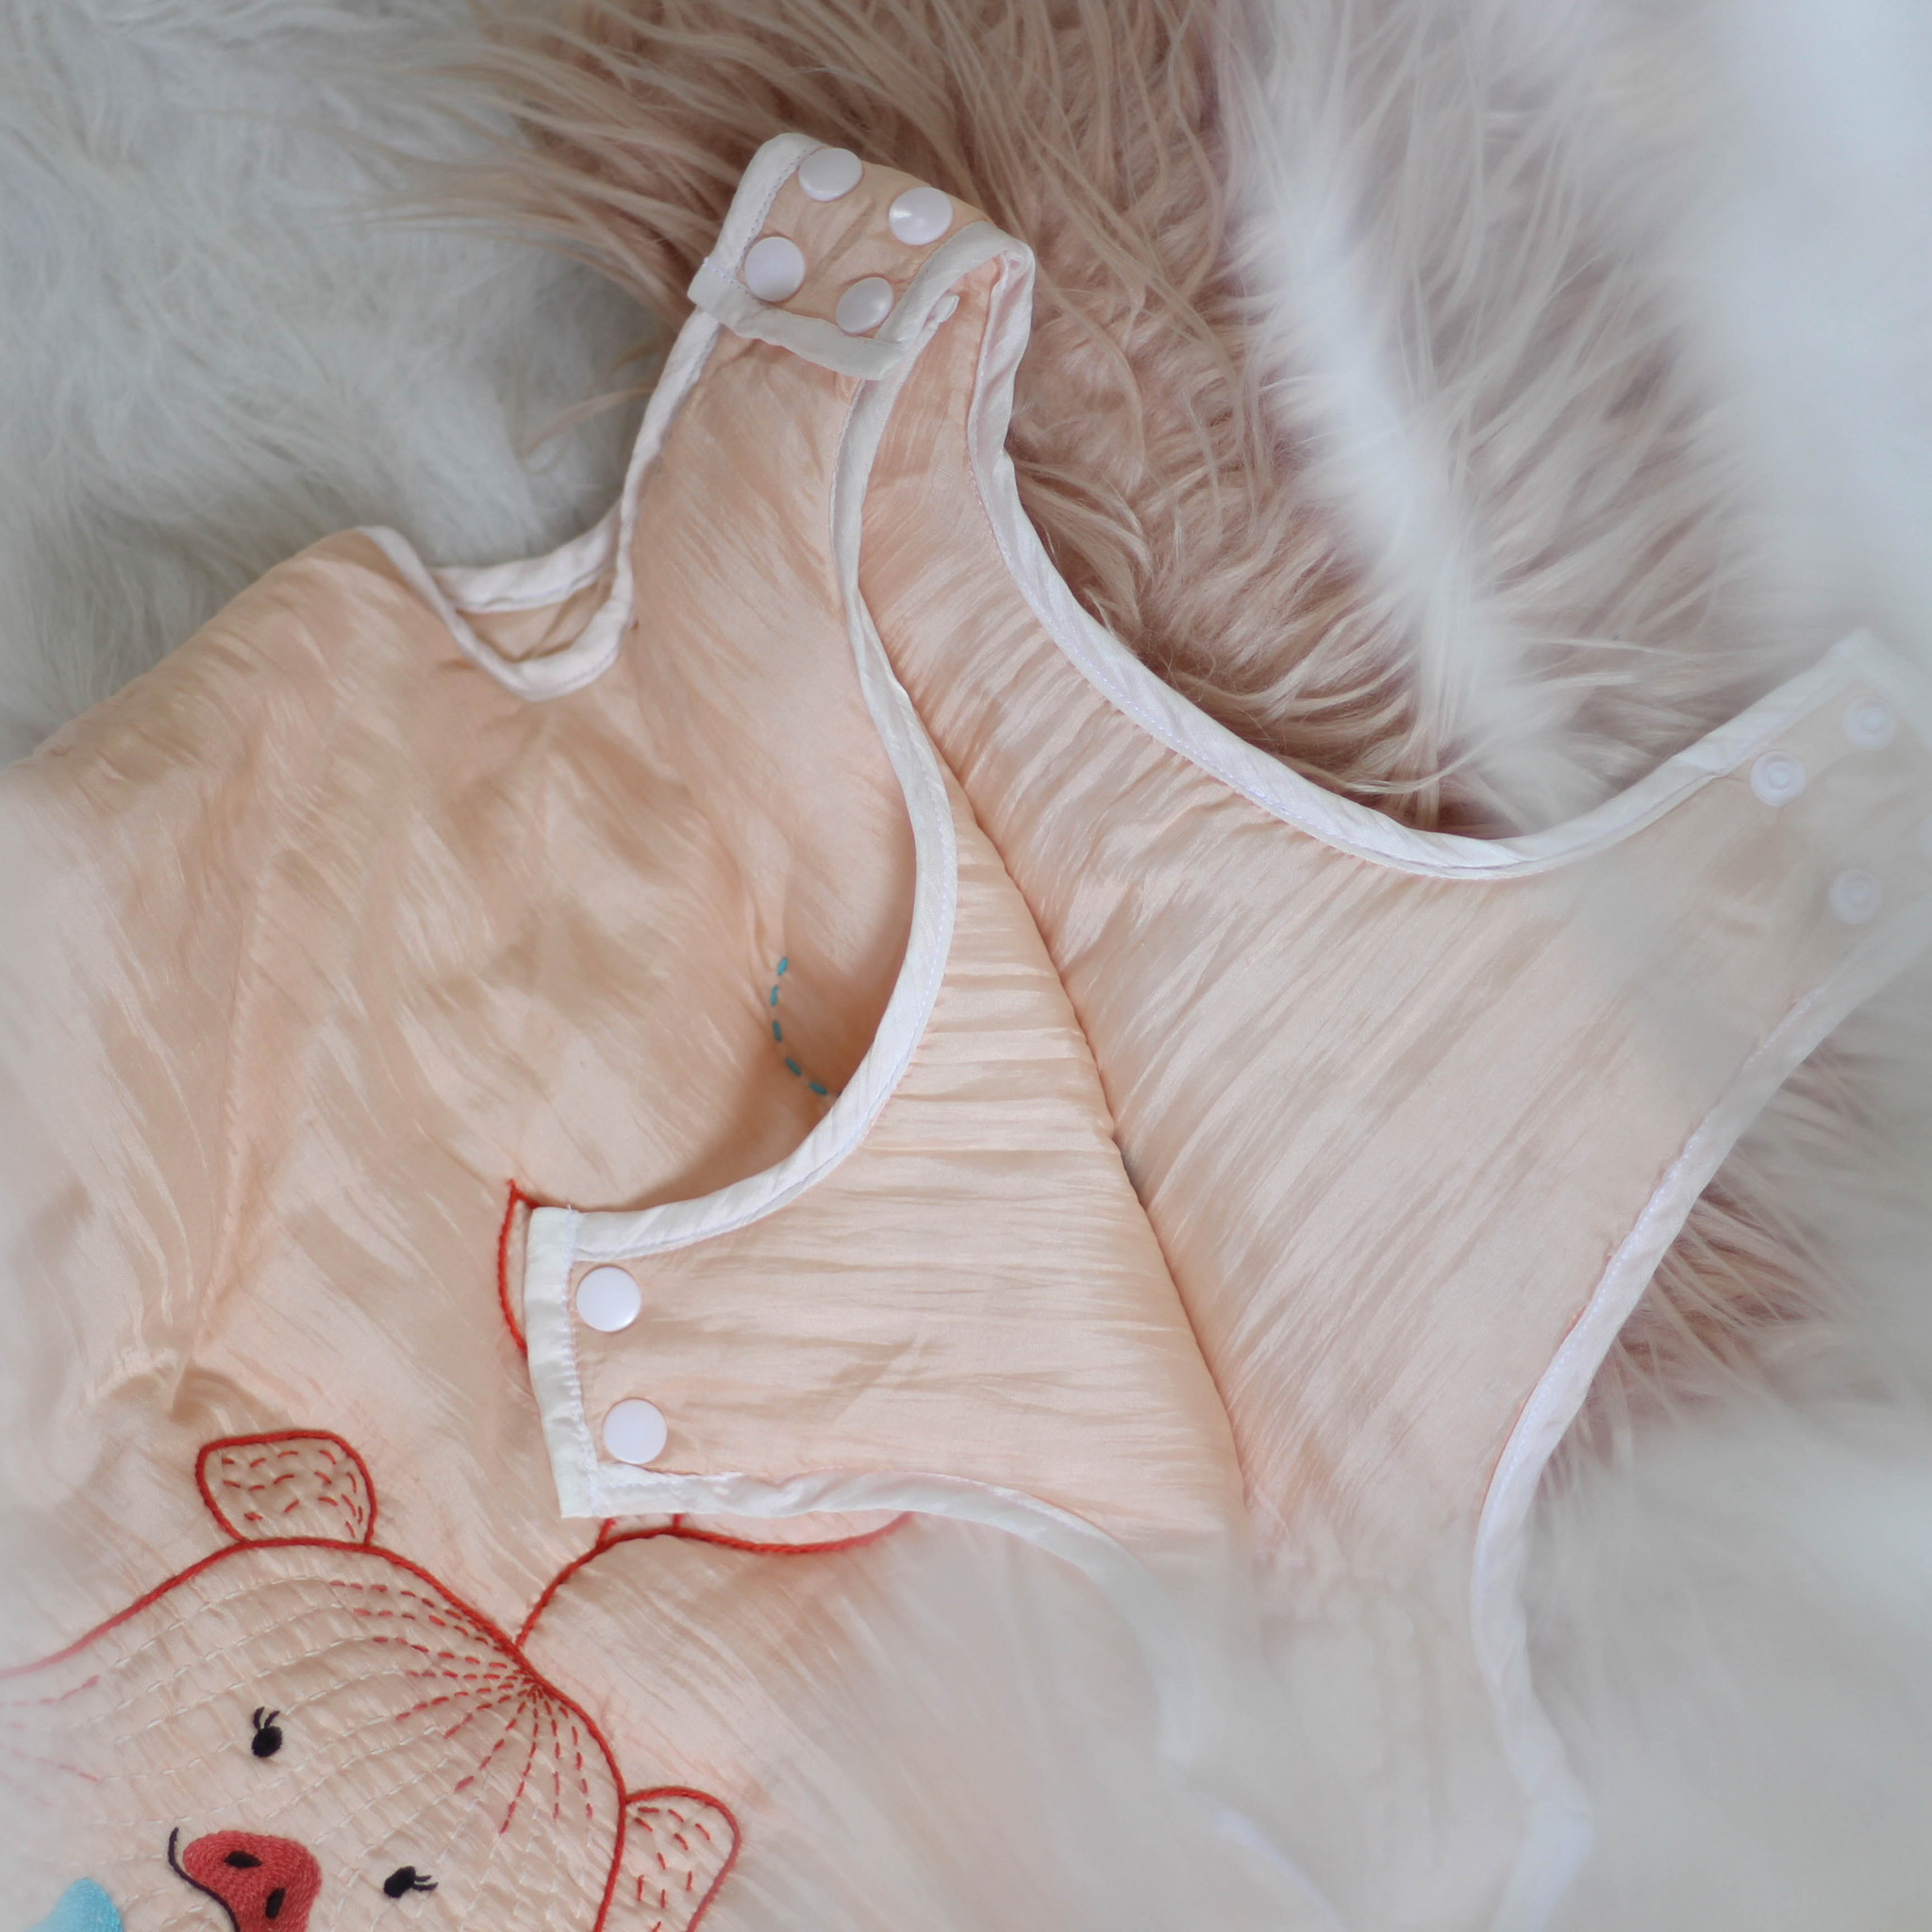 Silk Sleep Bag or Sack for Baby Girls Adorable